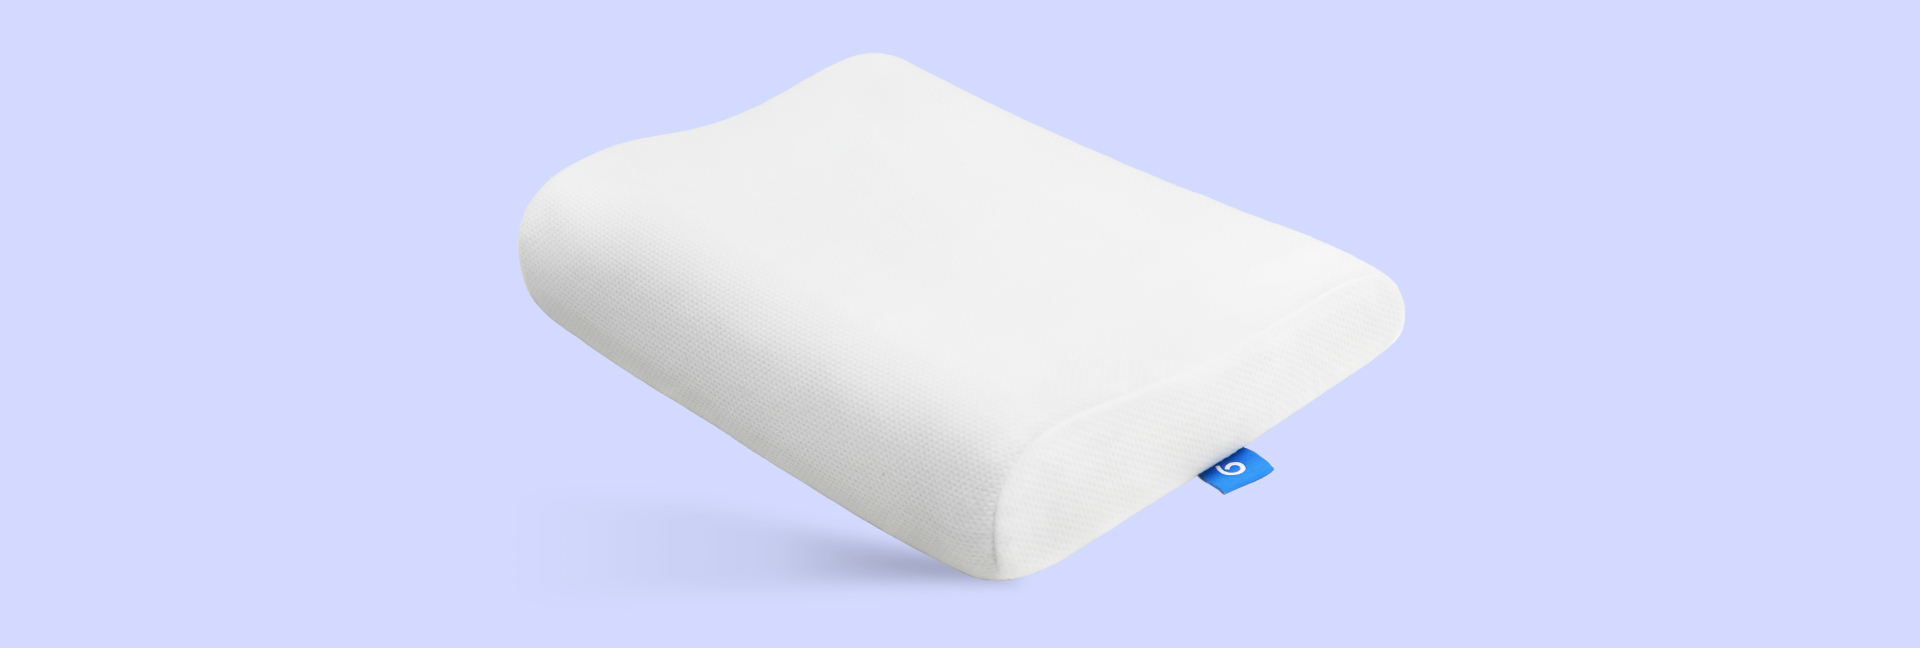 подушка blue sleep blossom